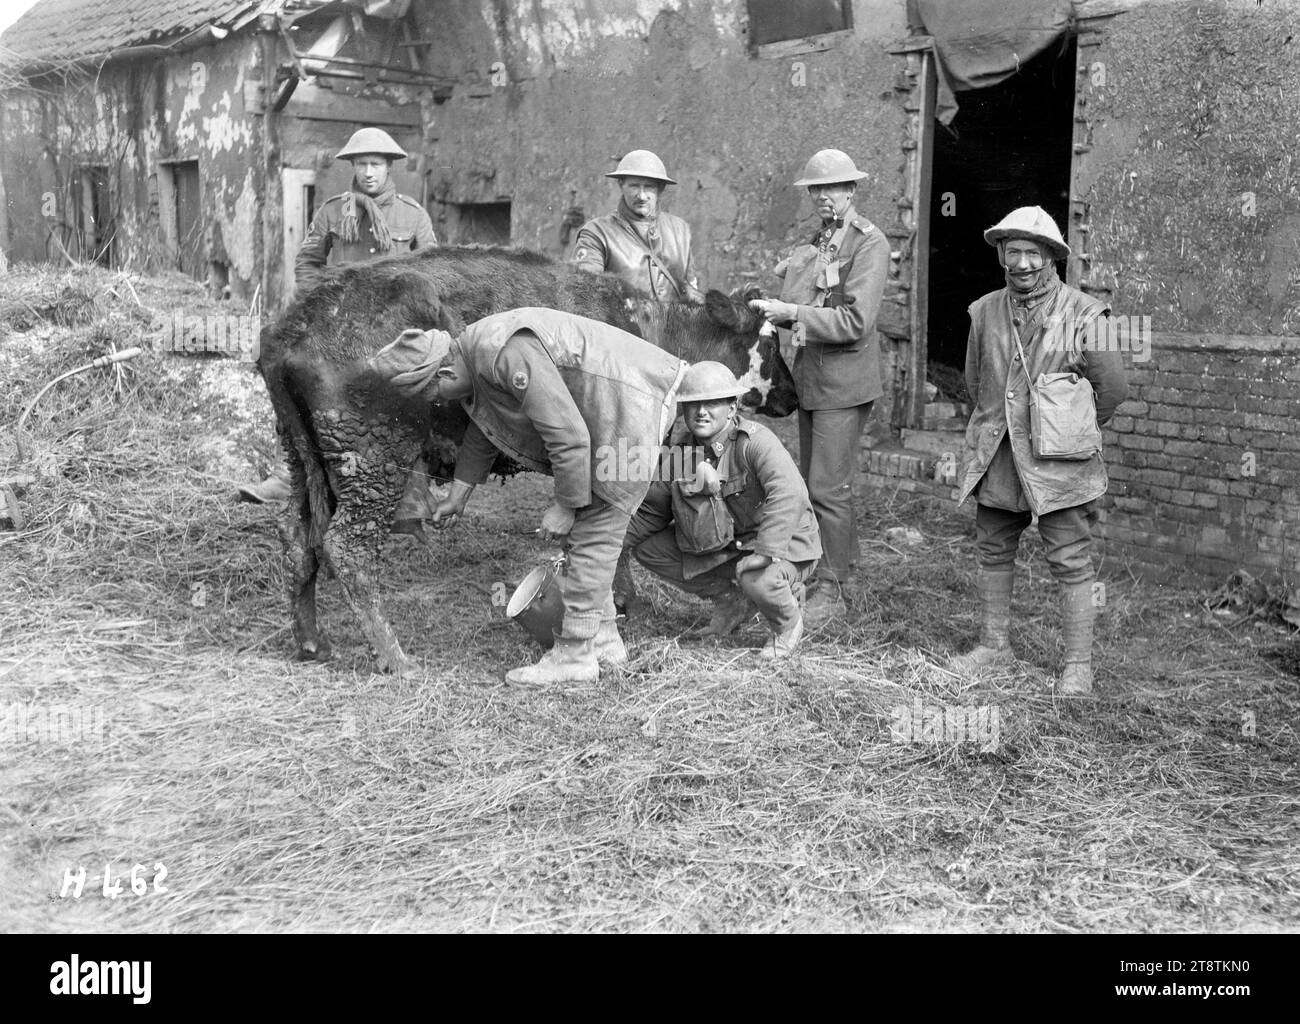 Neuseeländische Soldaten melken eine Kuh in der Nähe der Somme, neuseeländische Soldaten ergreifen die Gelegenheit, frische Milch von einer Kuh zu erhalten, die von ihren Besitzern in einem Dorf an der Somme verlassen wurde. Zeigt einen Soldaten, der eine Kuh melkt, während zwei weitere Soldaten die Bestie stationieren. Foto: Courcelles, Frankreich, 1. April 1918 Stockfoto